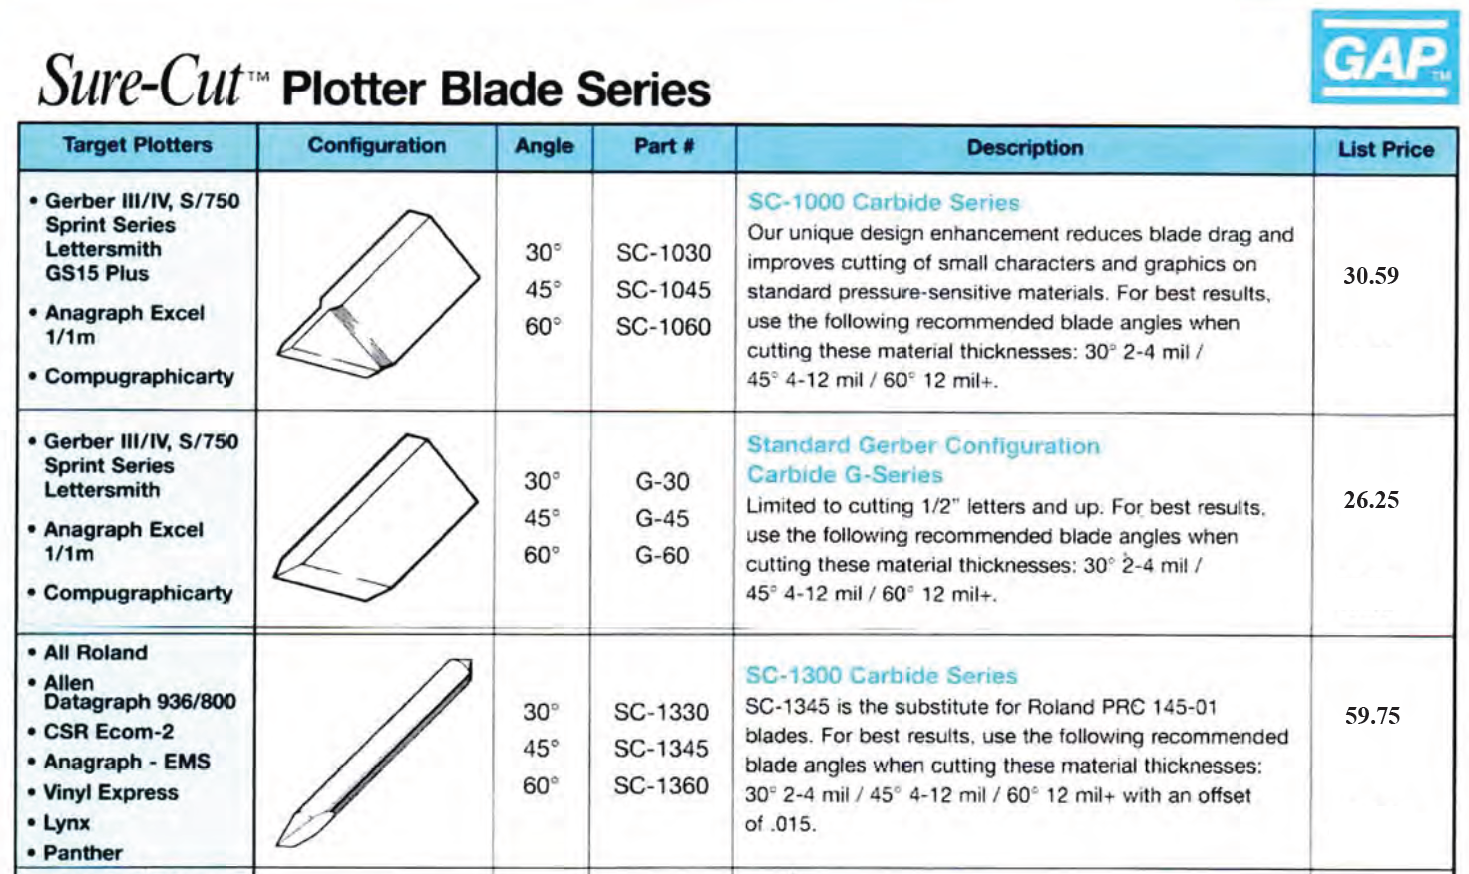 Plotter blade 1 mar 2023 1 - "Sure-Cut" Plotter Blades